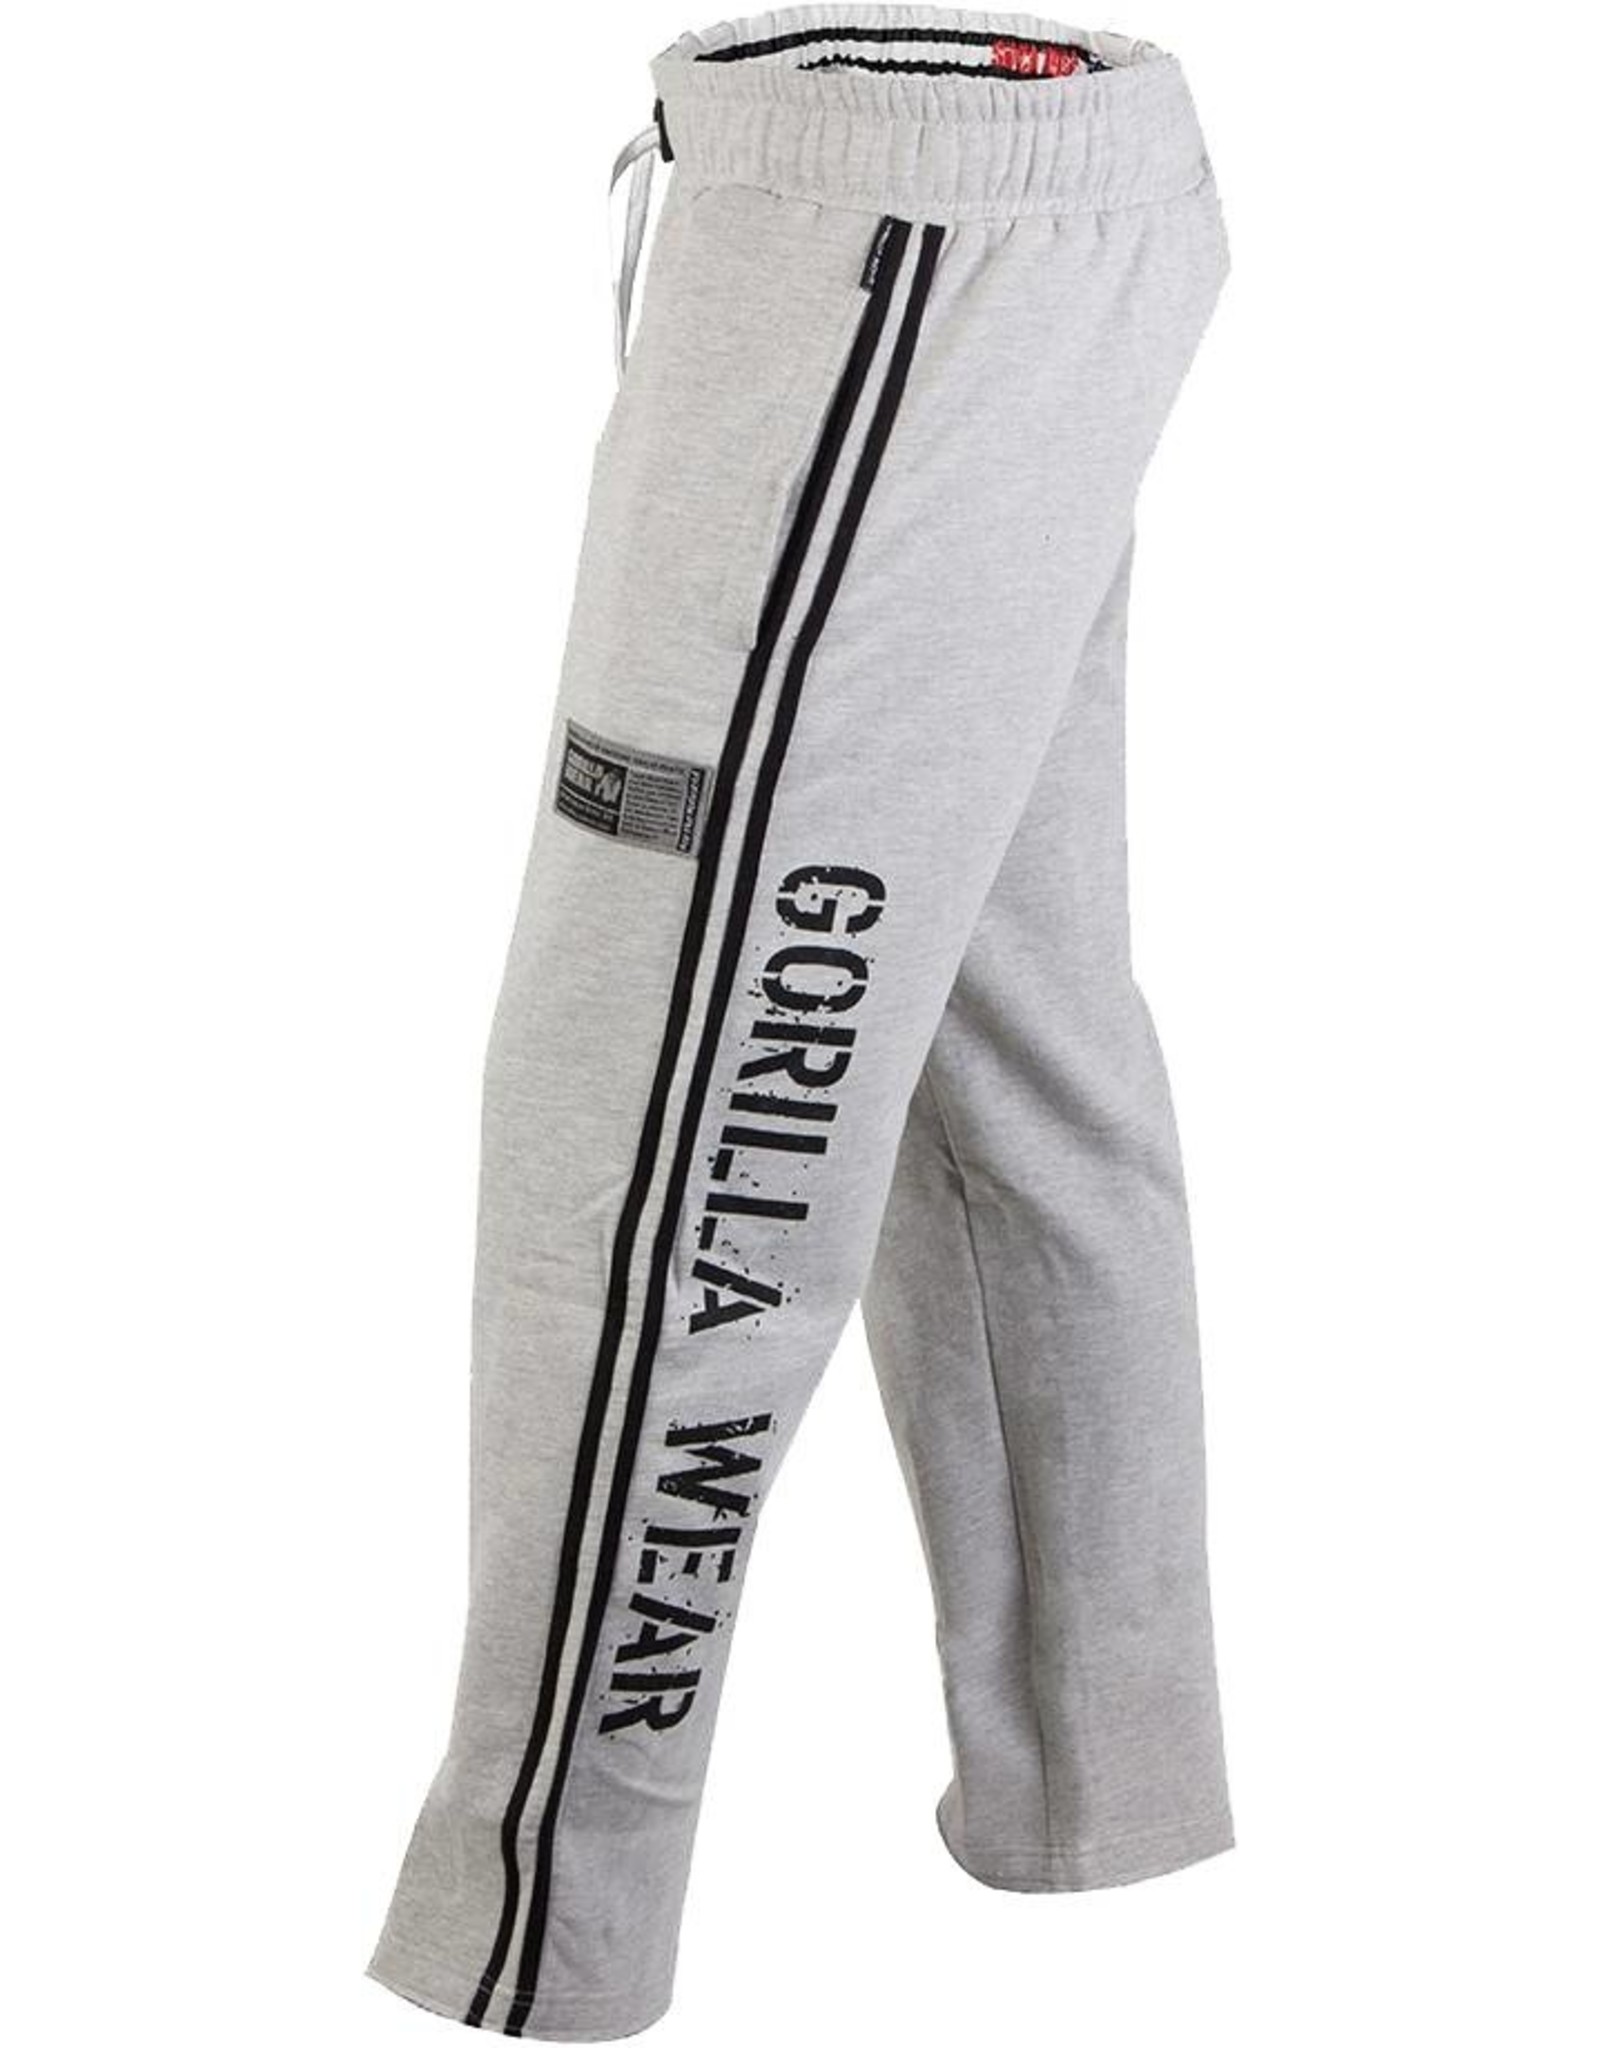 Gorilla Wear 2-Stripe Sweatpants - Light Grey